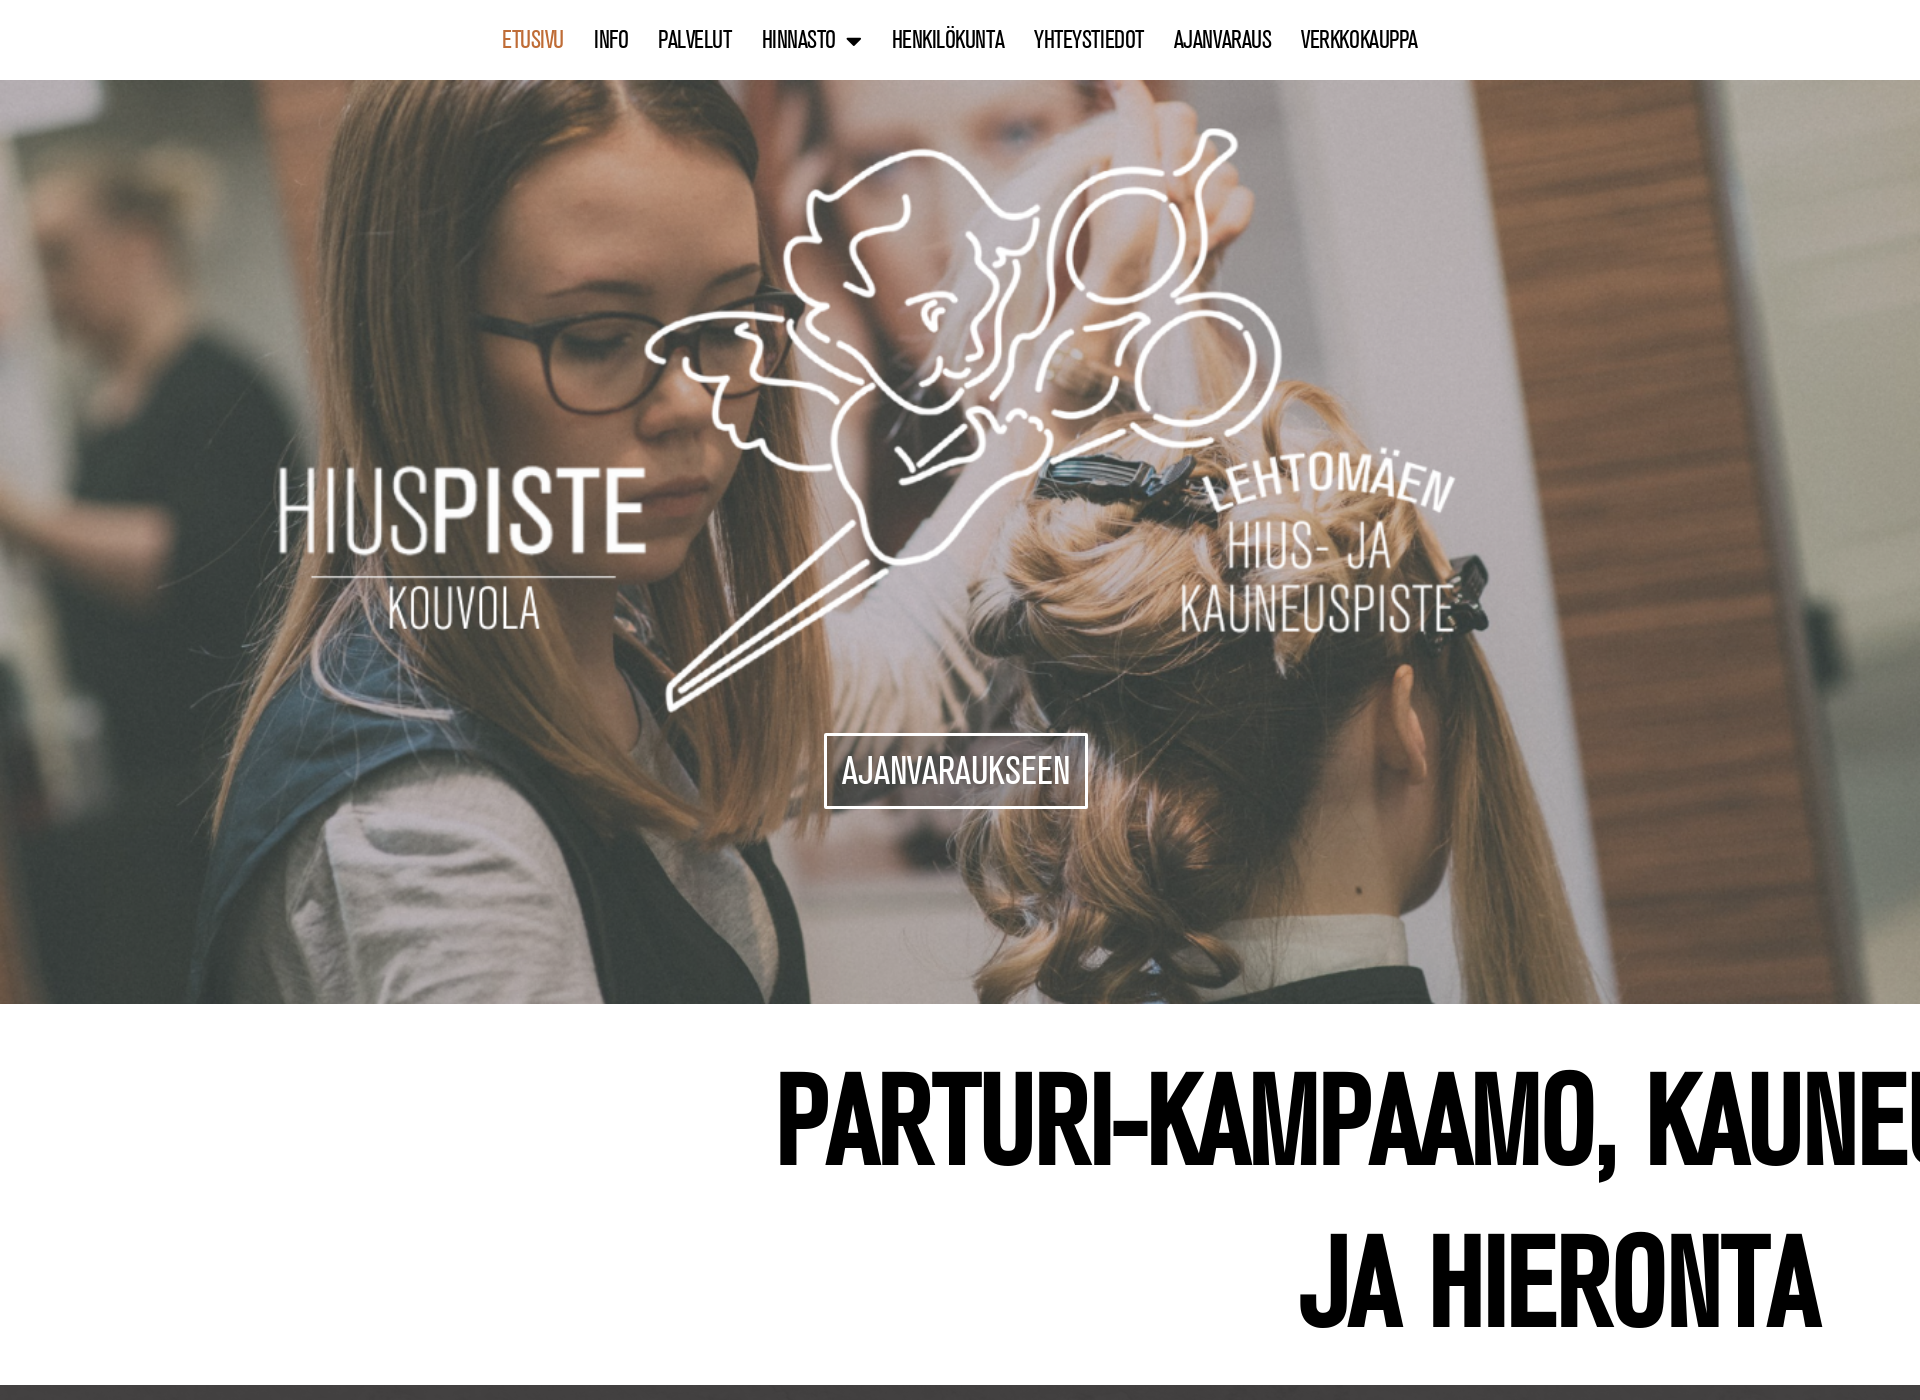 Näyttökuva hiusjakauneus.fi